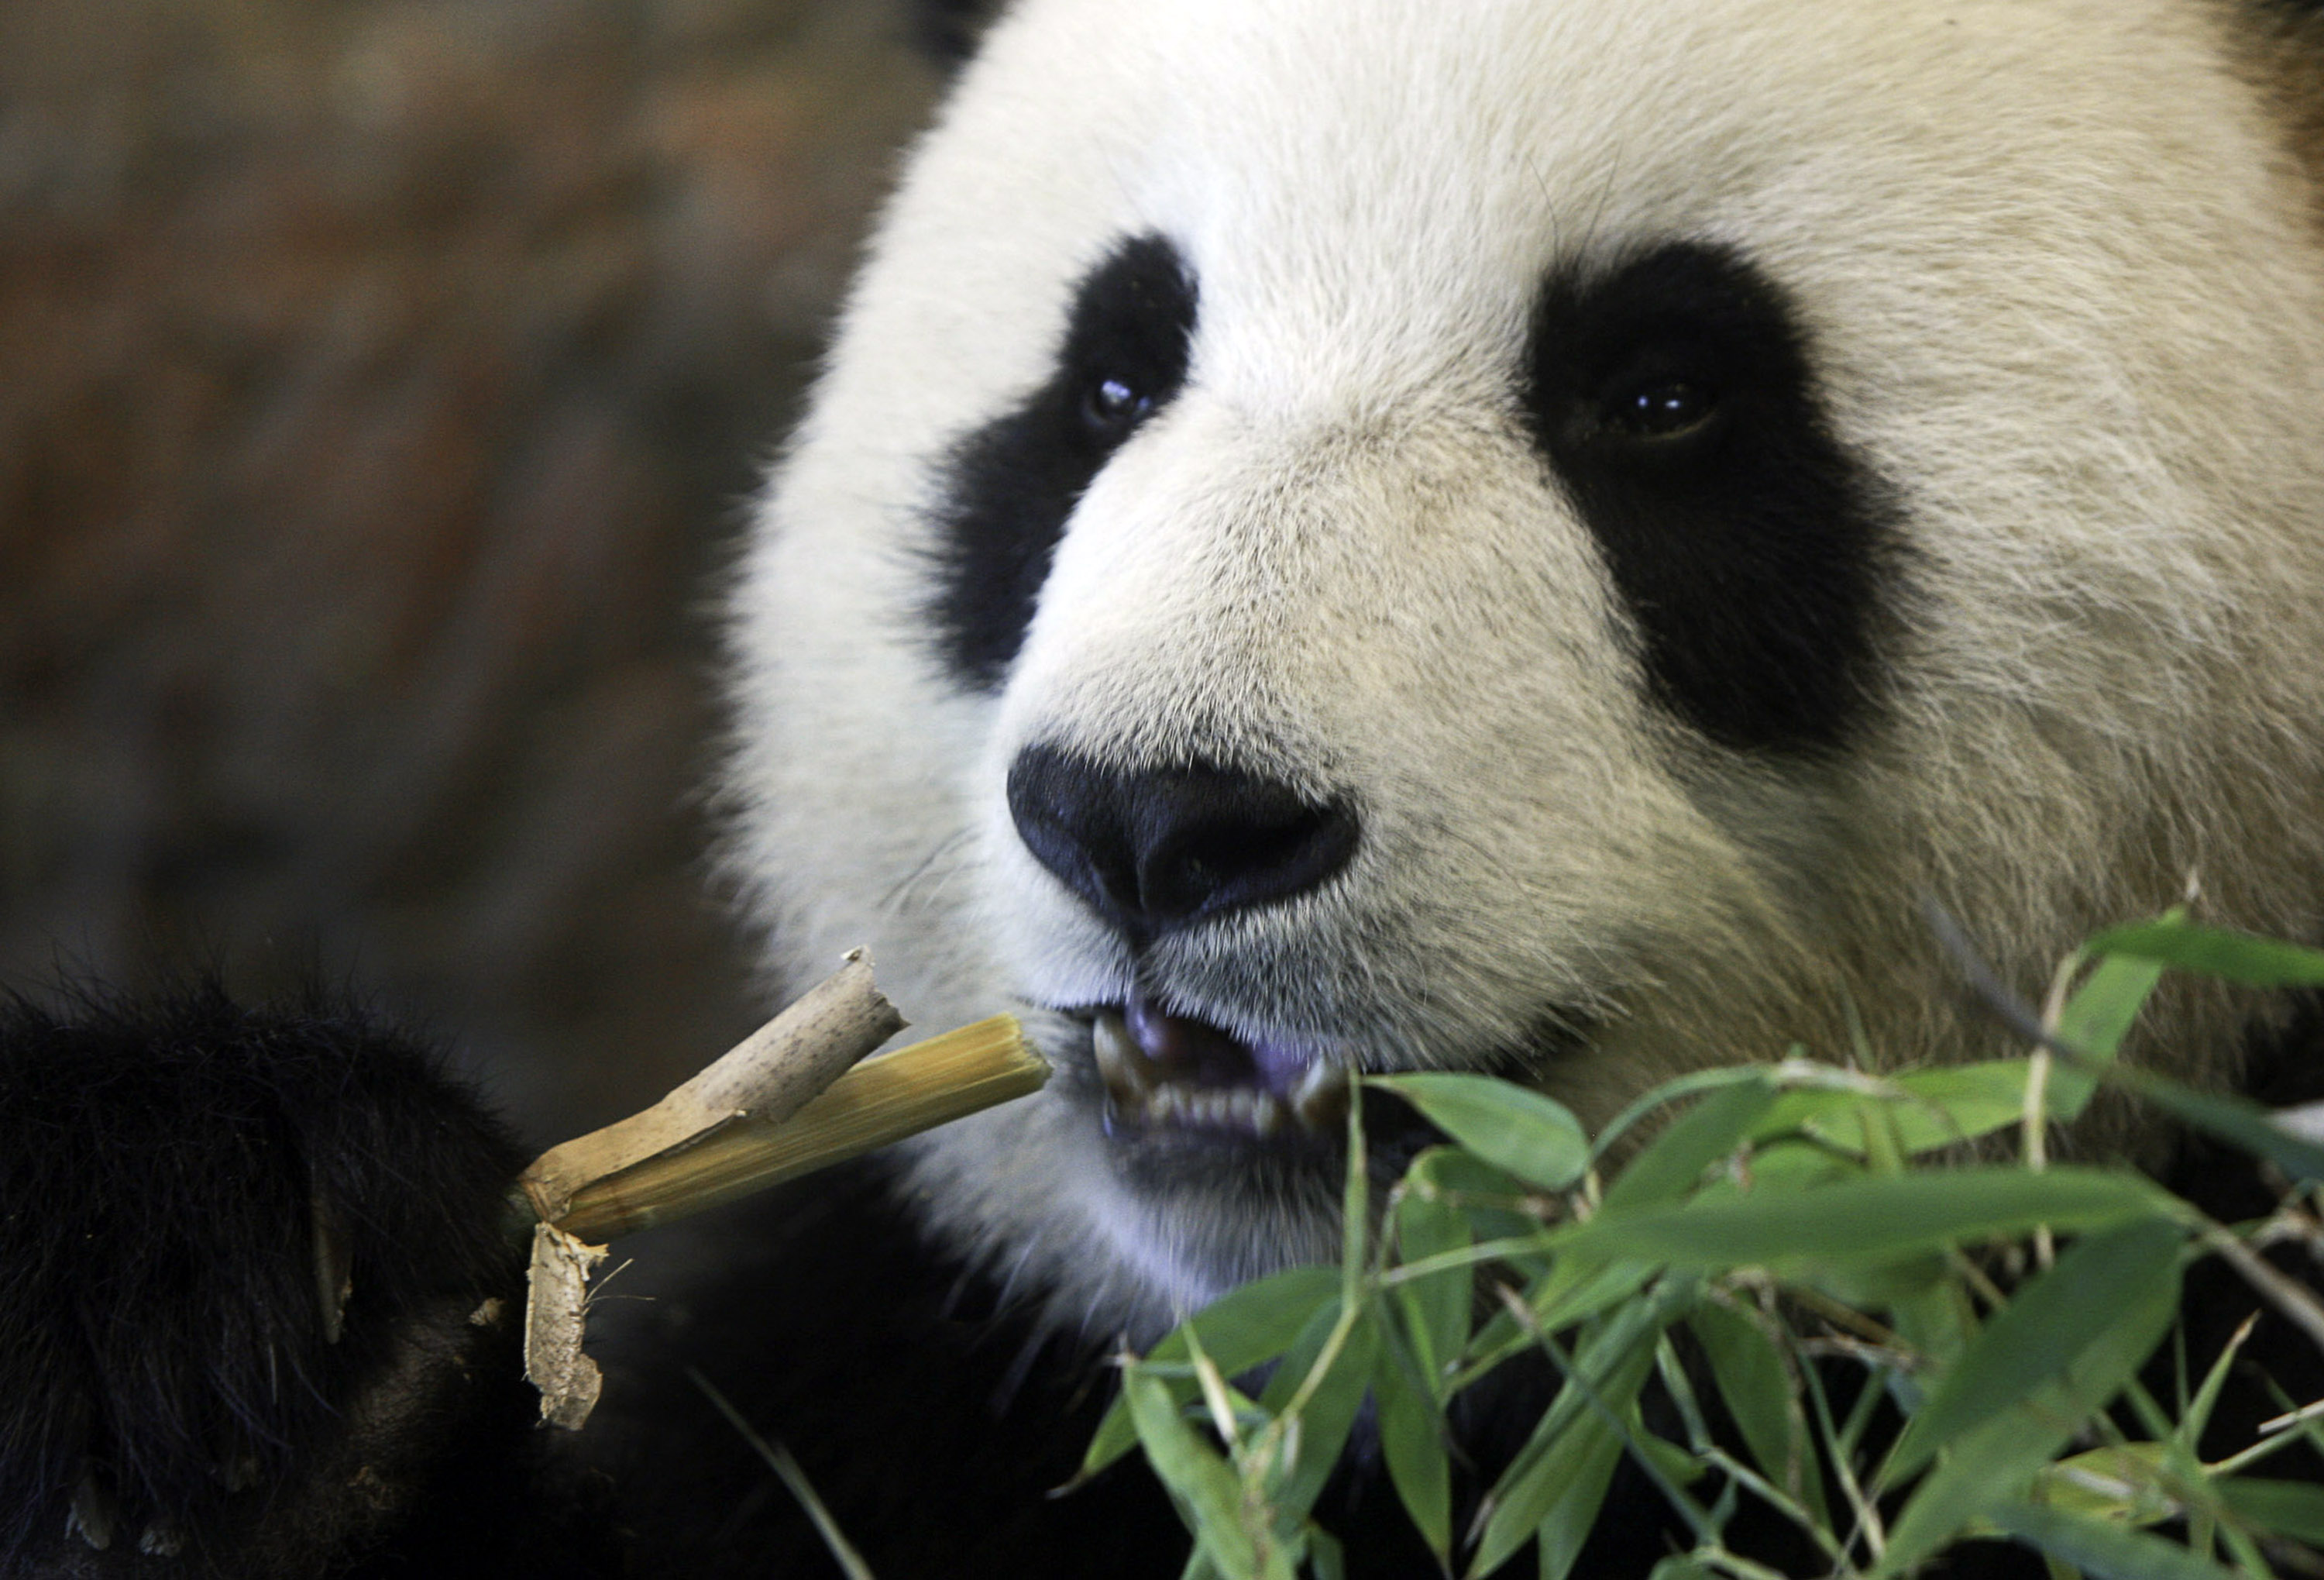 Giant panda Funi samples bamboo in her new enclosure